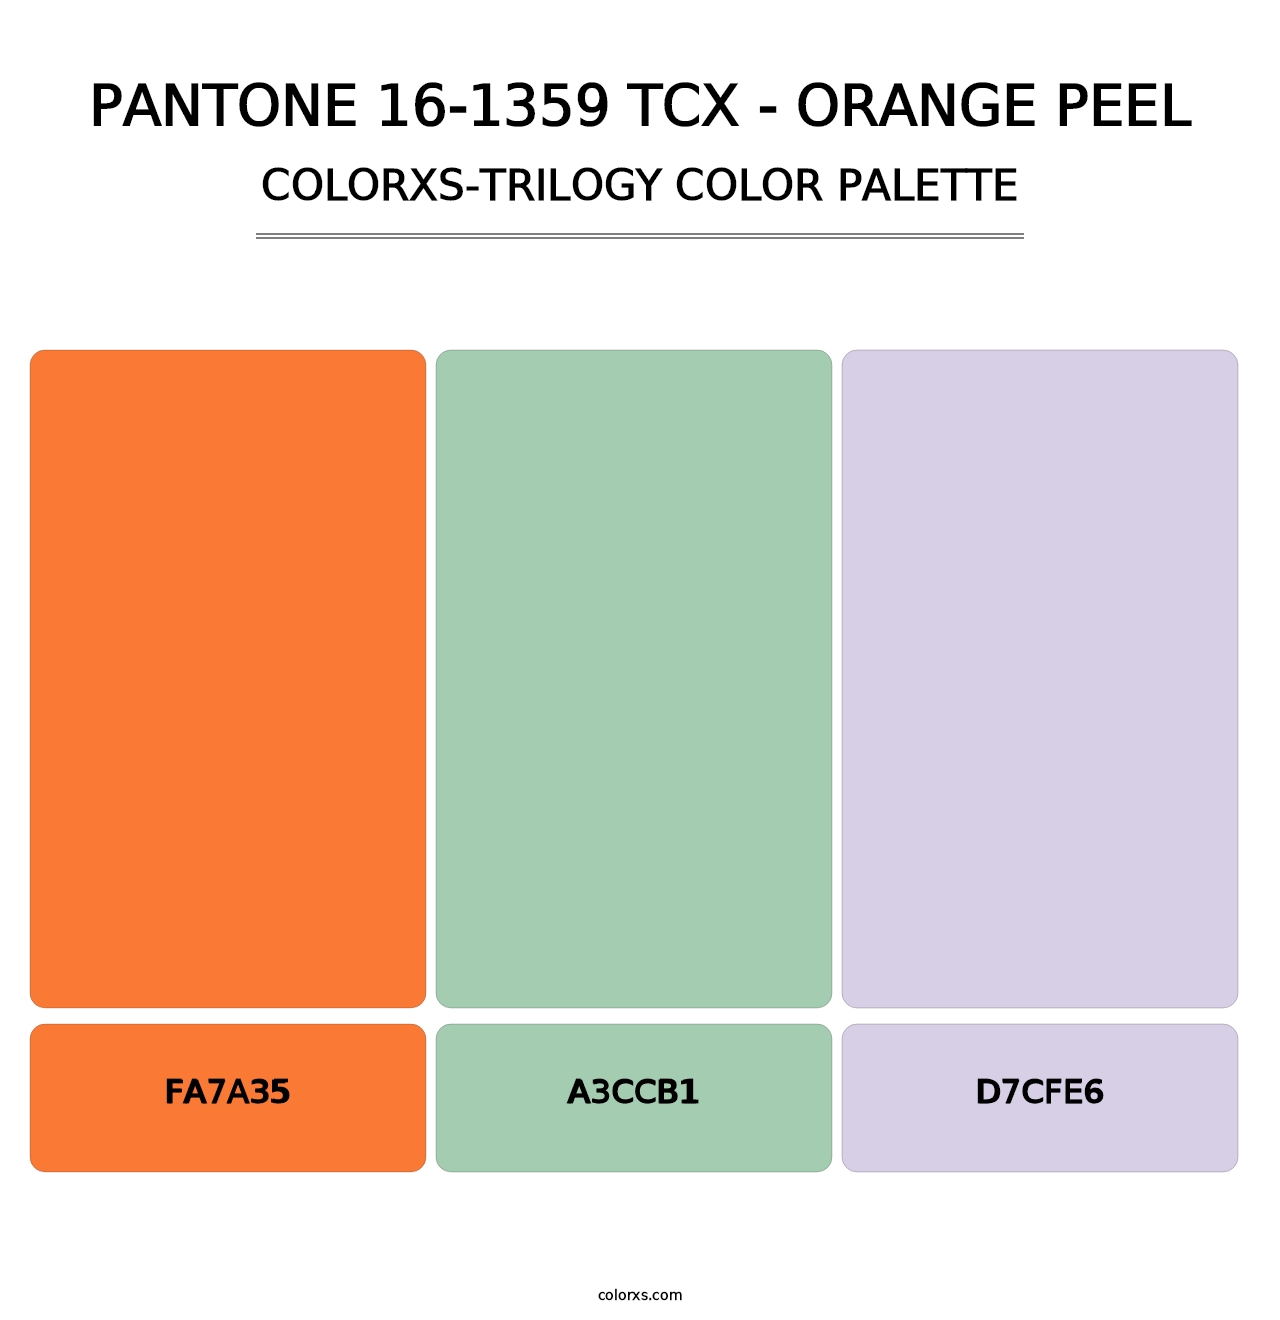 PANTONE 16-1359 TCX - Orange Peel - Colorxs Trilogy Palette